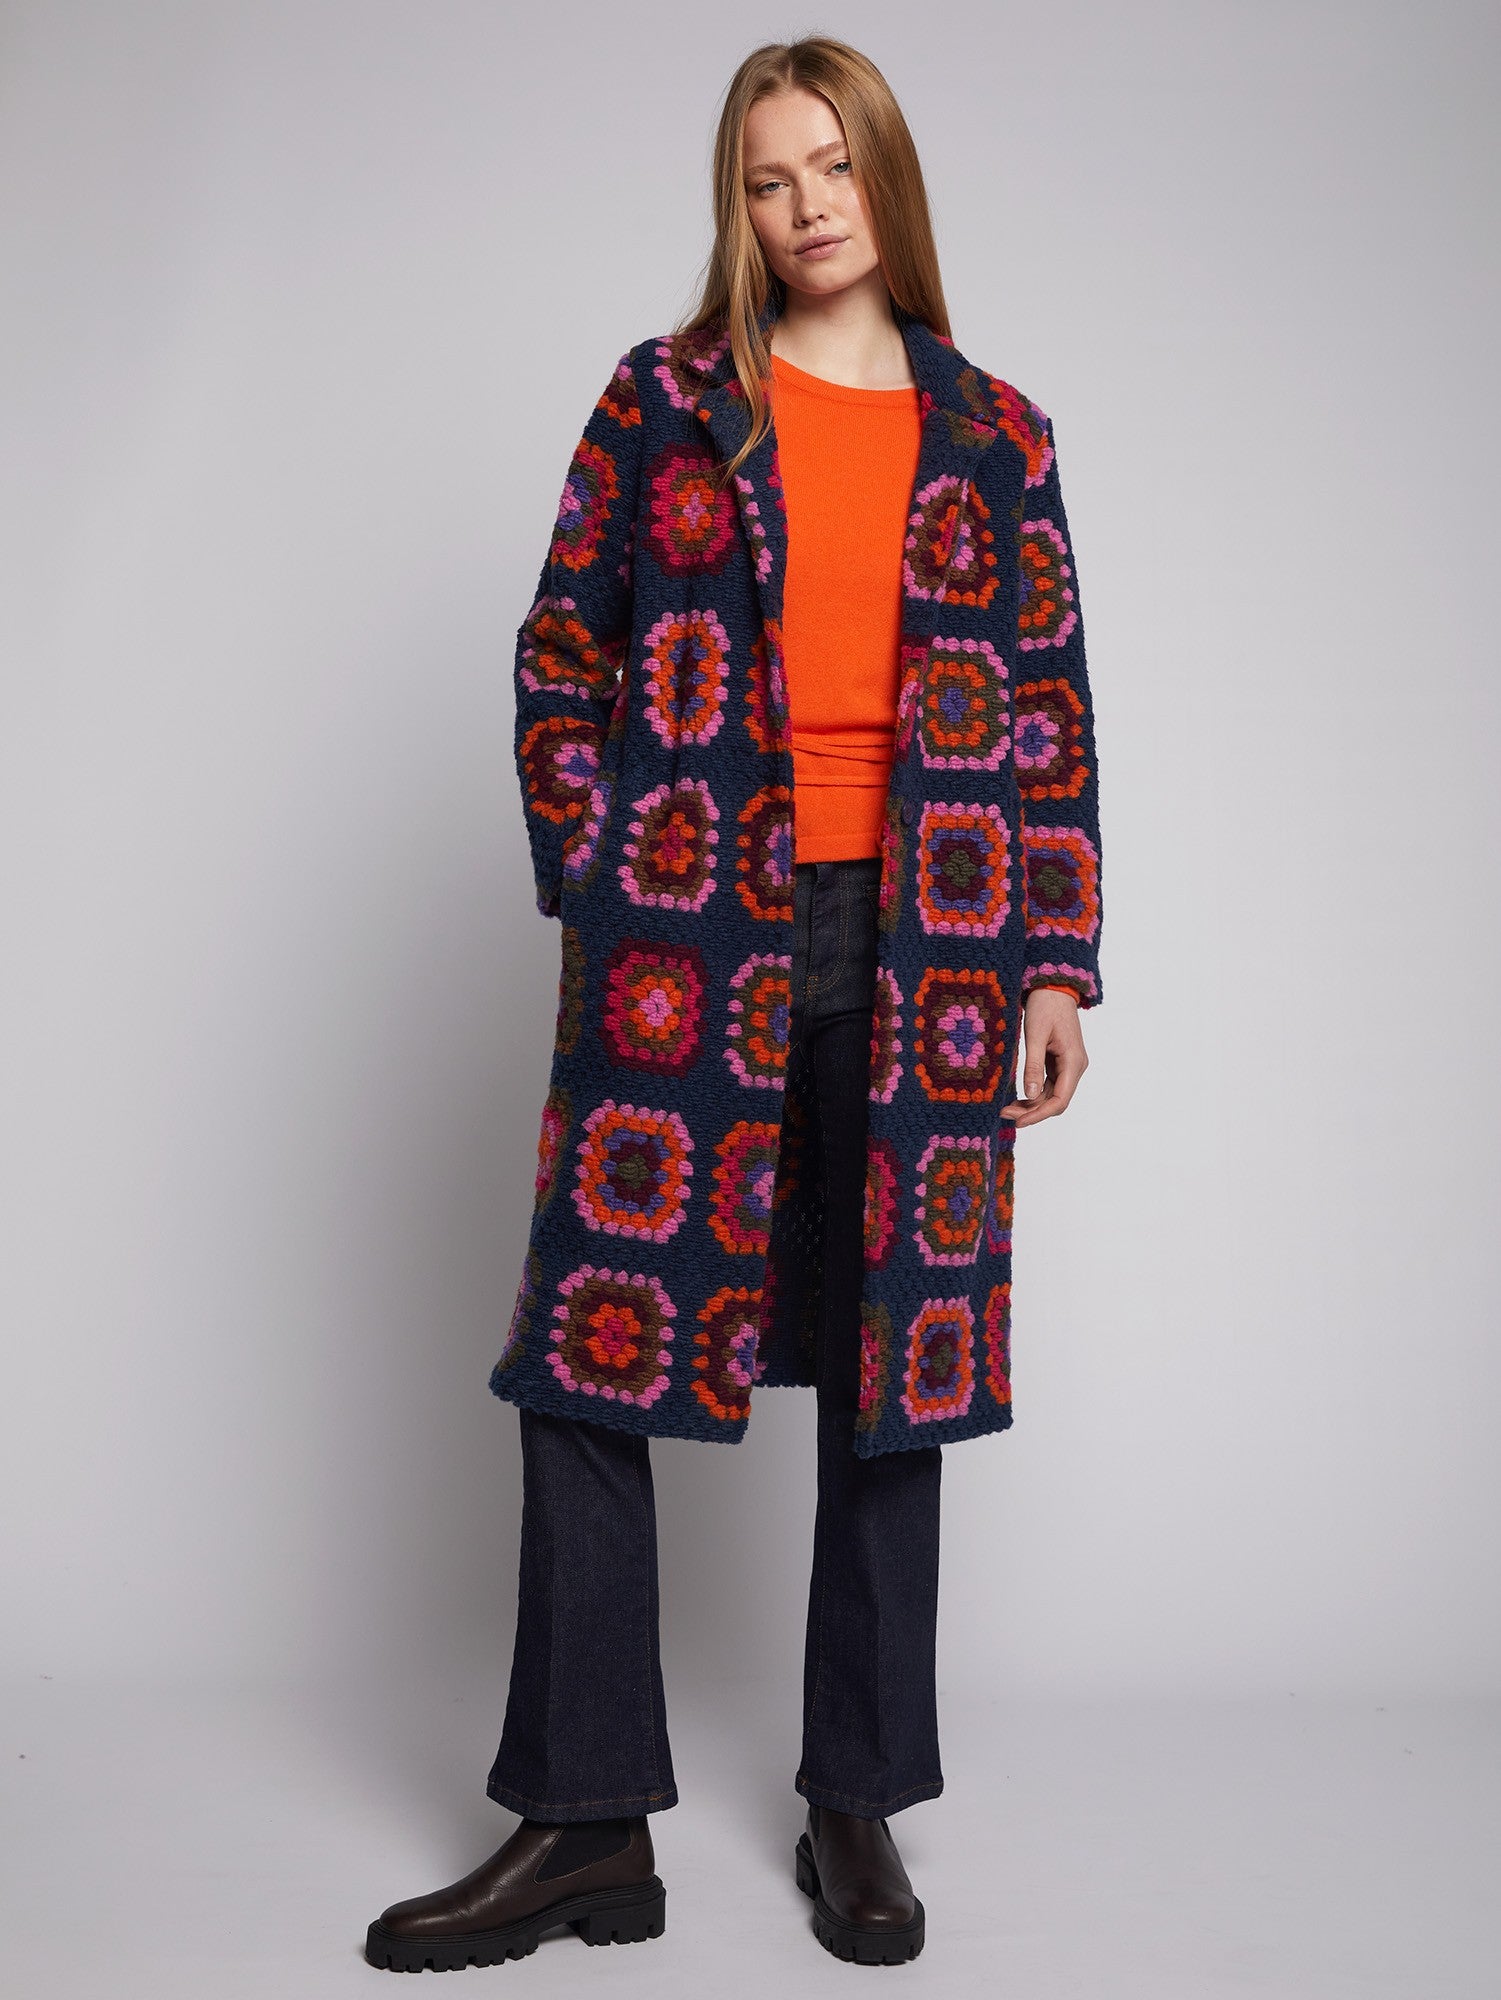 Yana Coat in Crochet Design in Navy